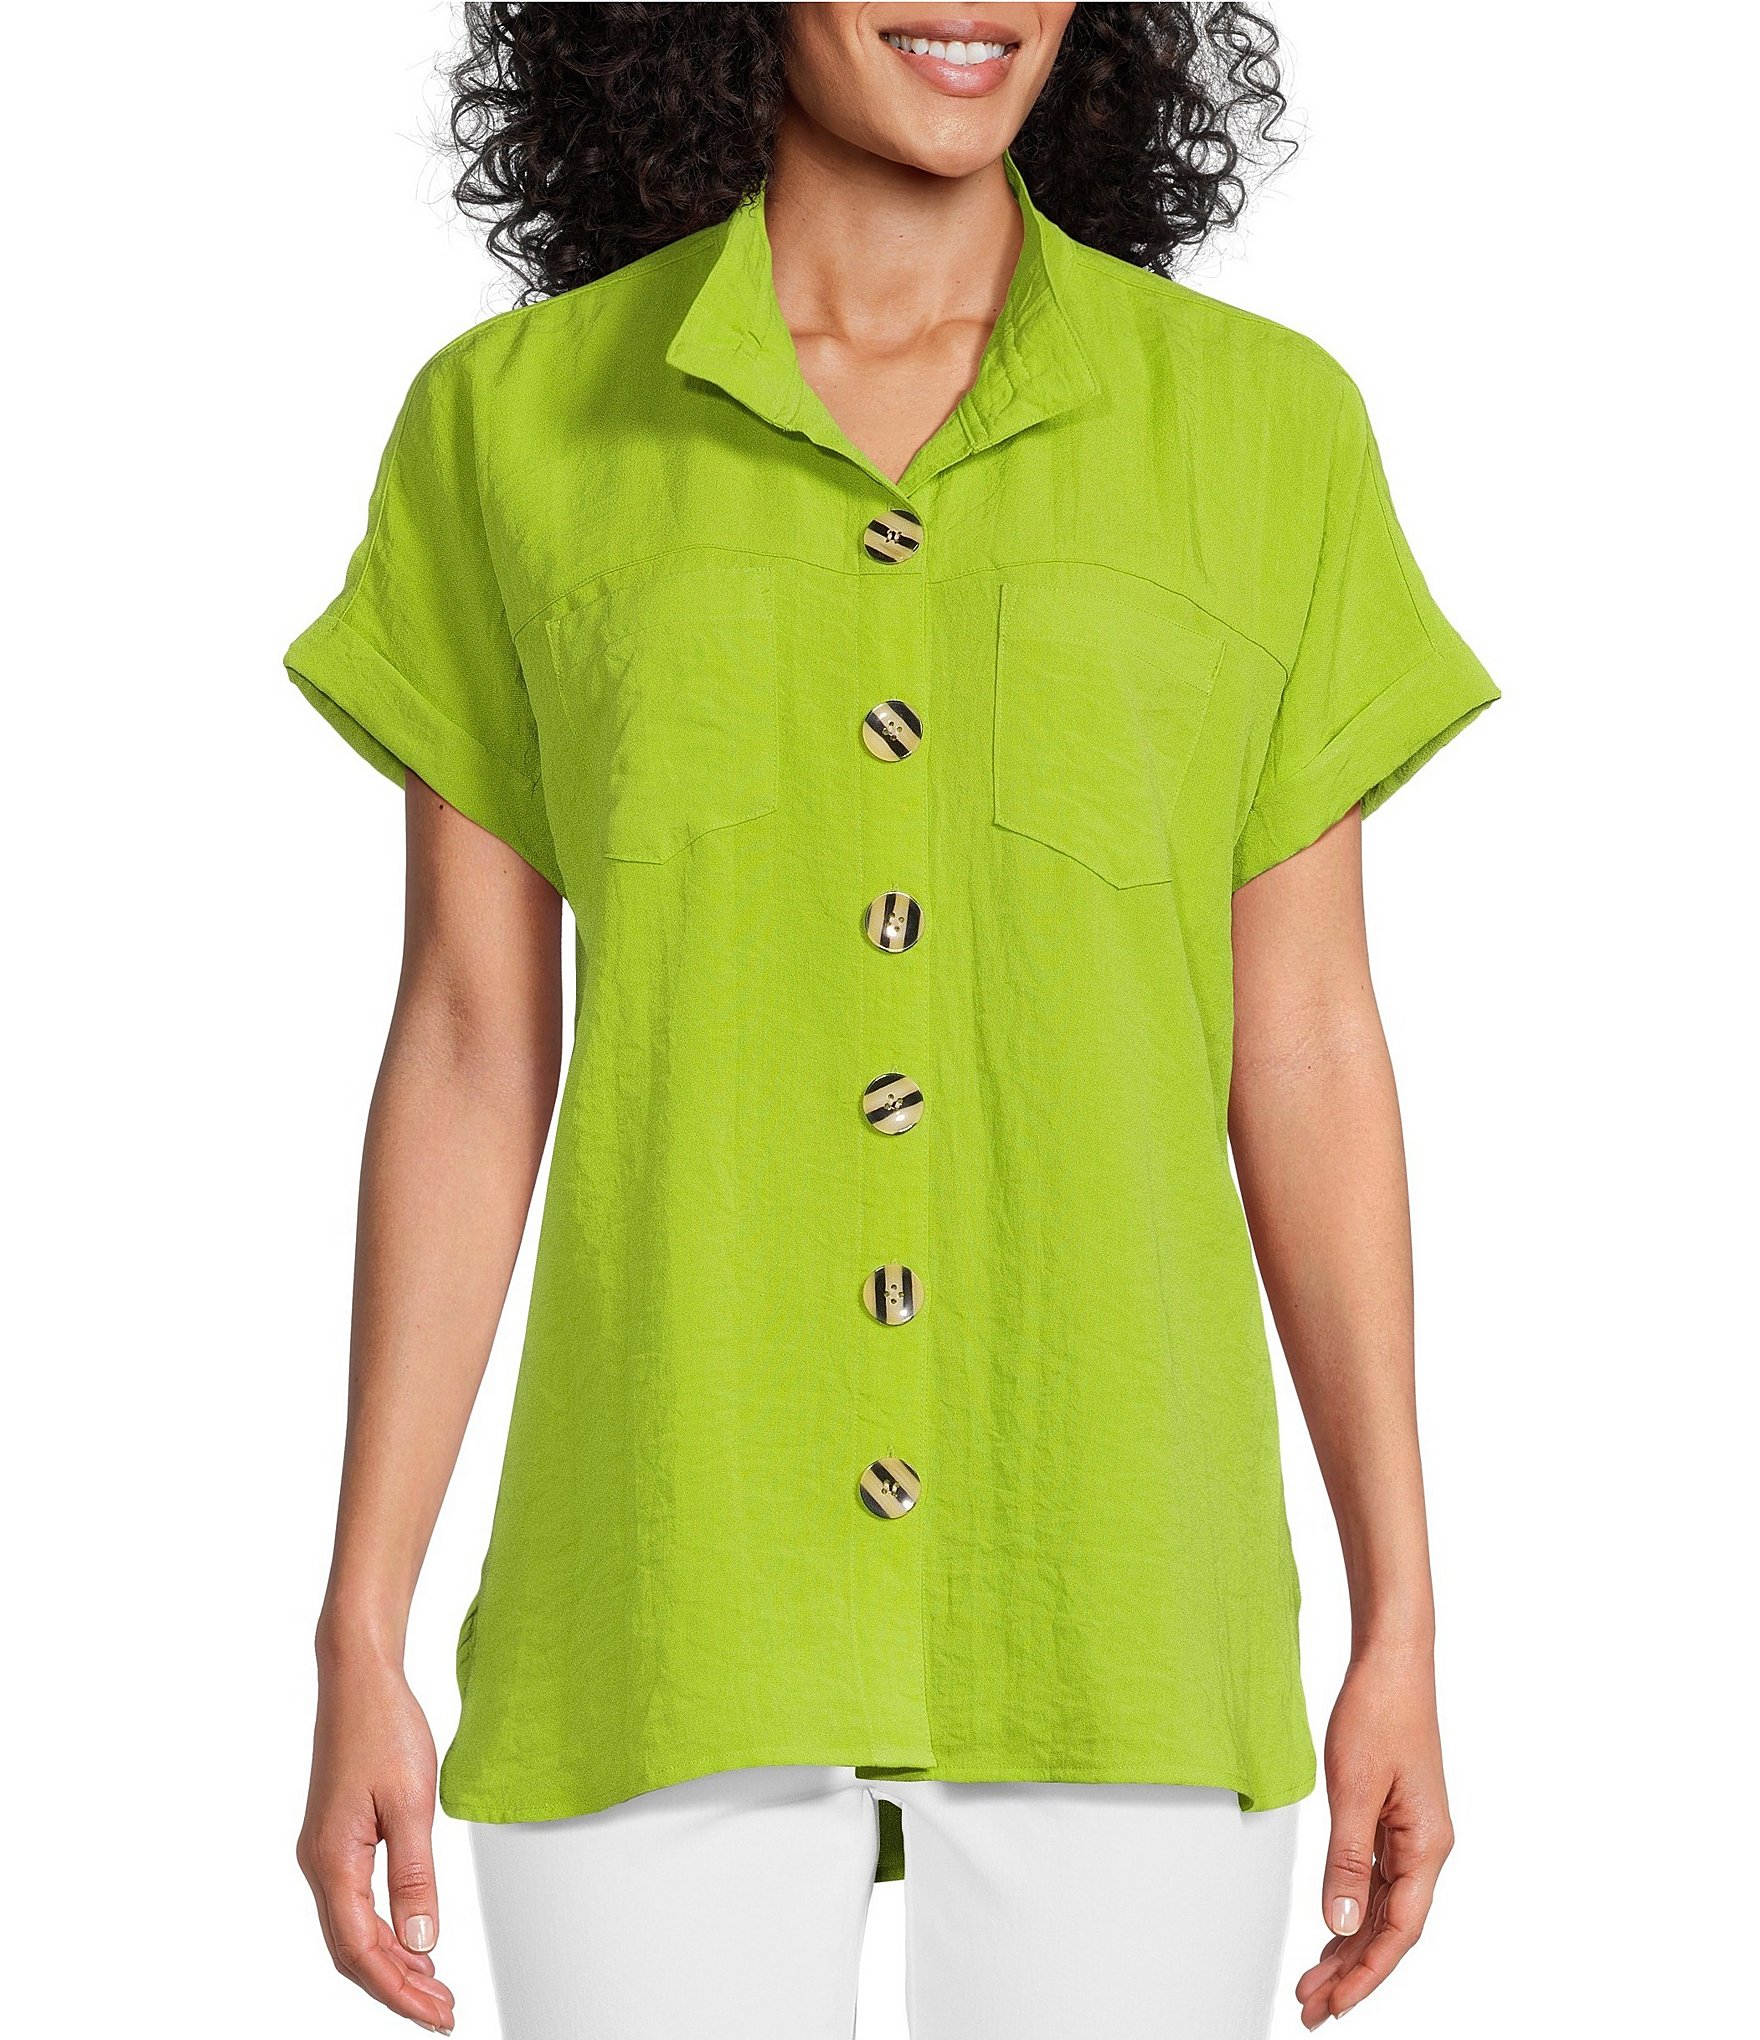 Green Women's Shirts & Tops